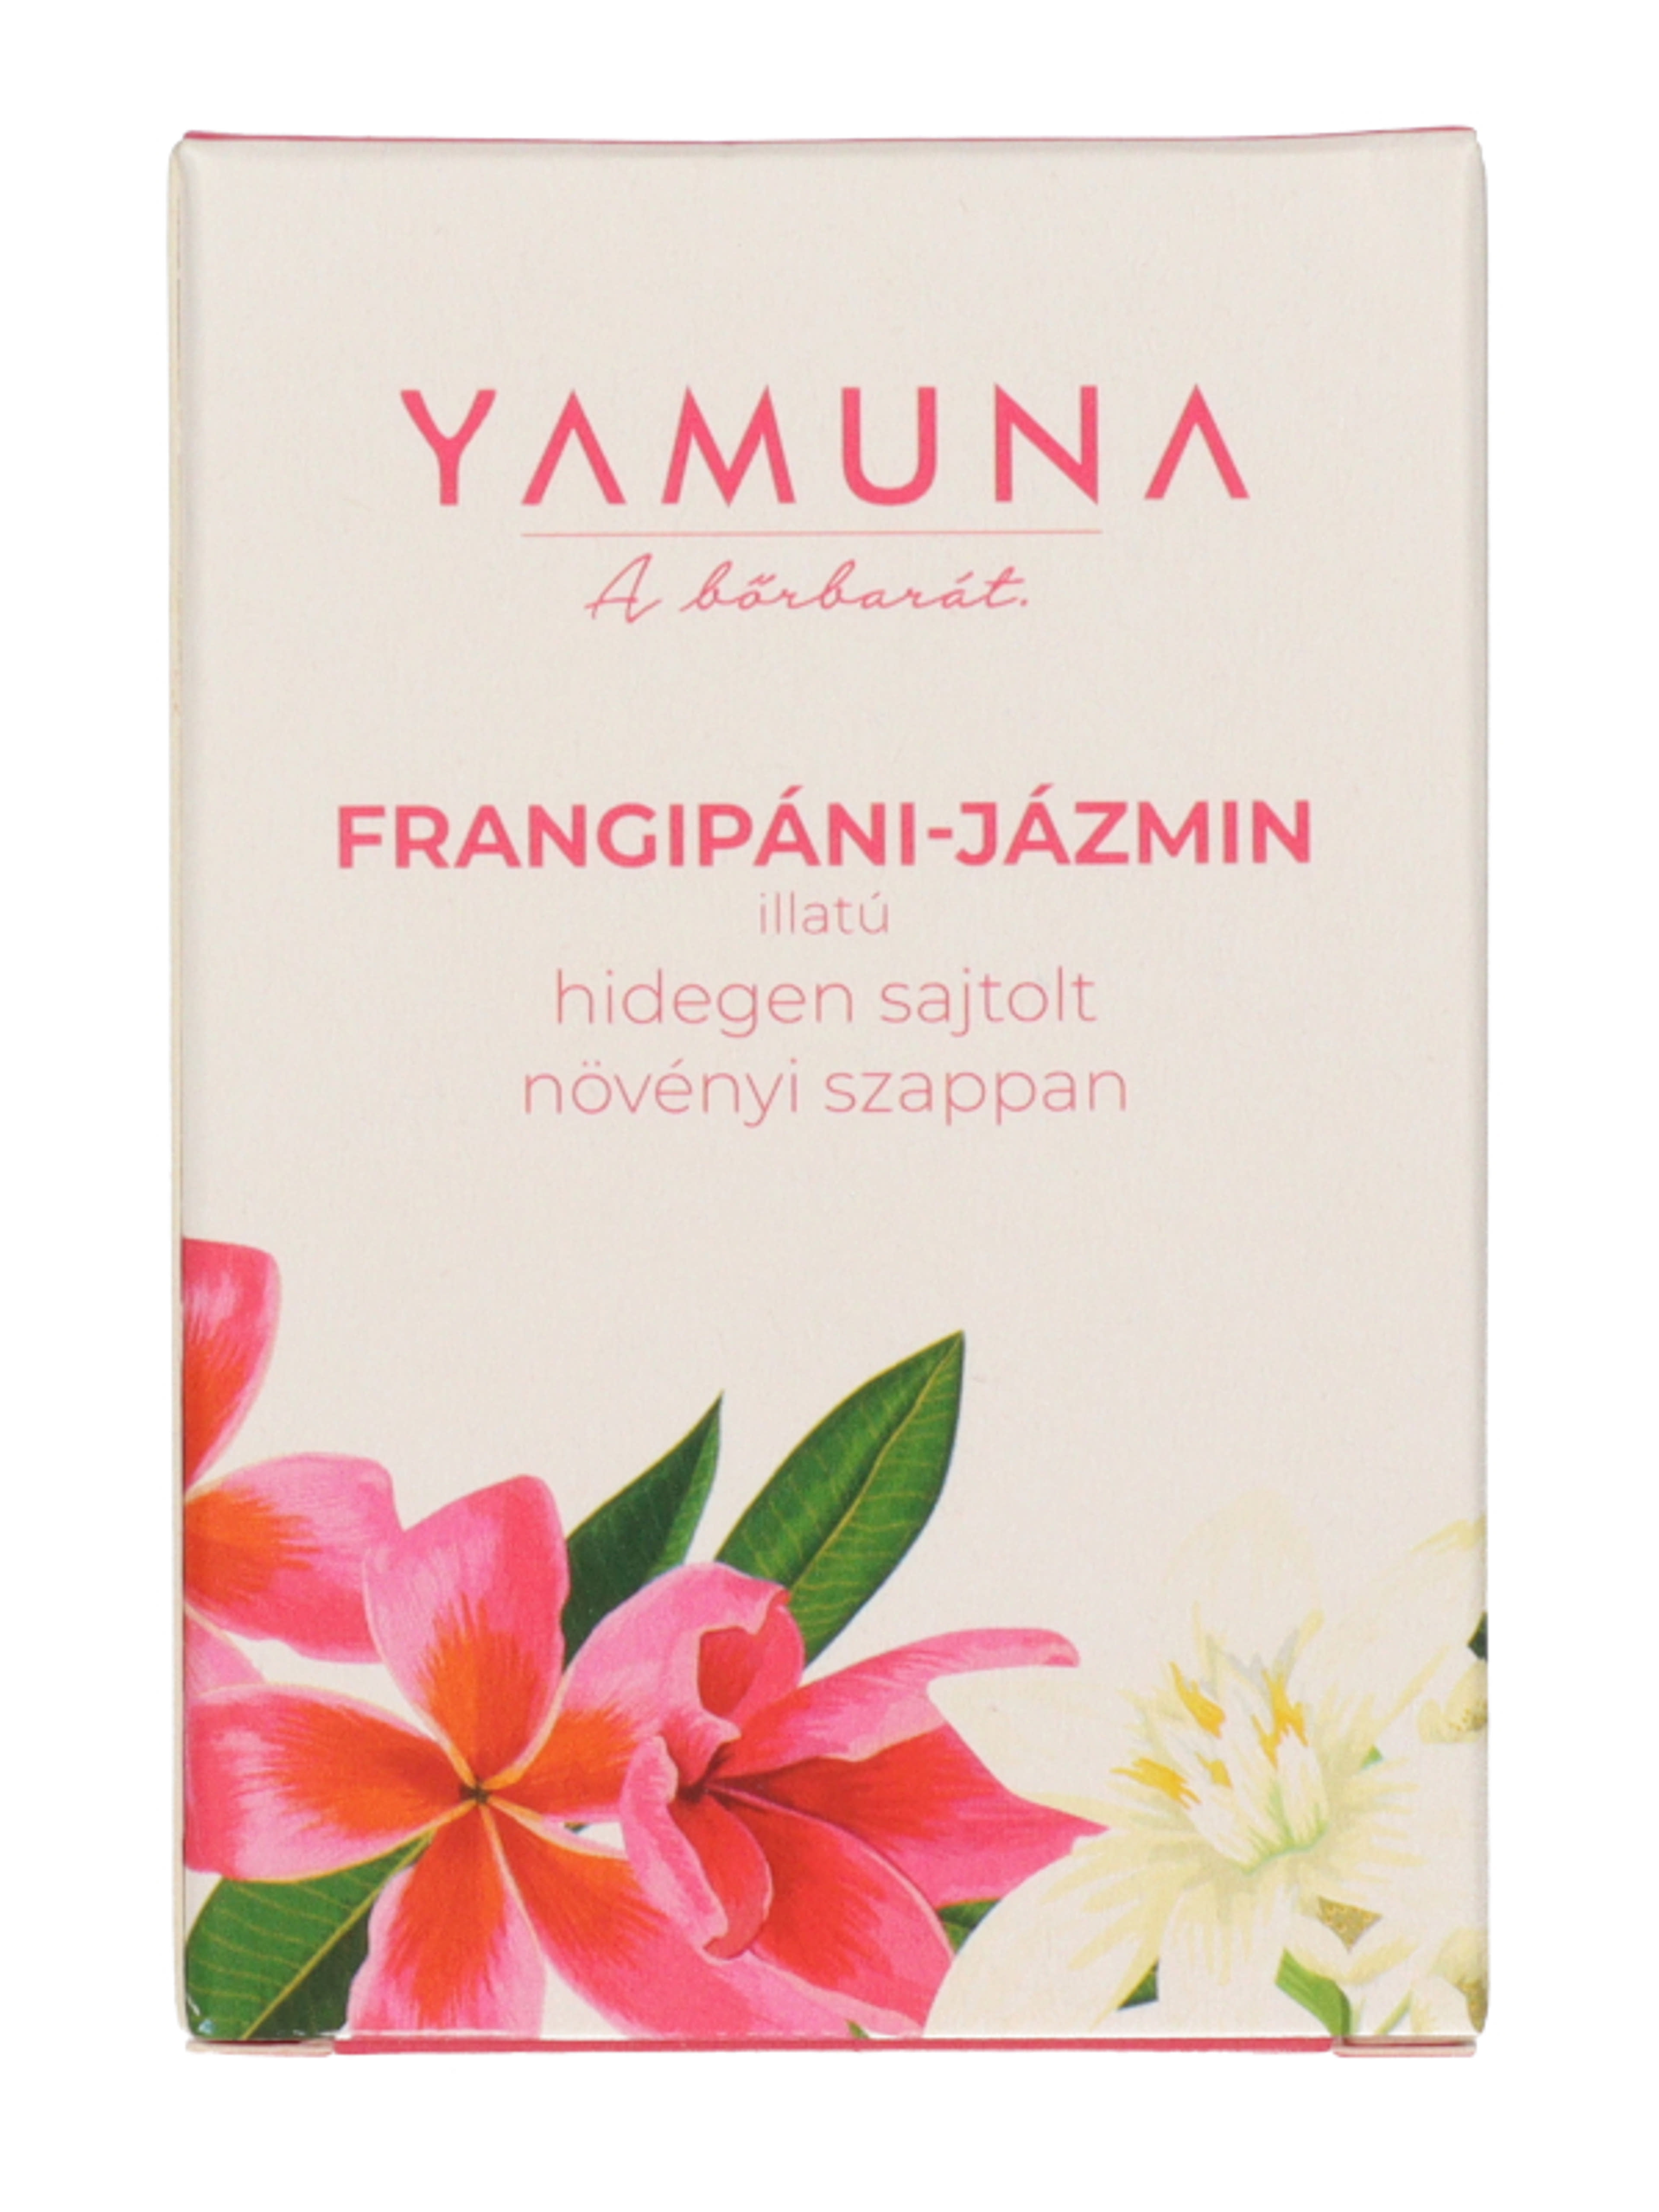 Yamuna hidegen sajtolt szappan frangipáni-jázmin illattal - 110 g